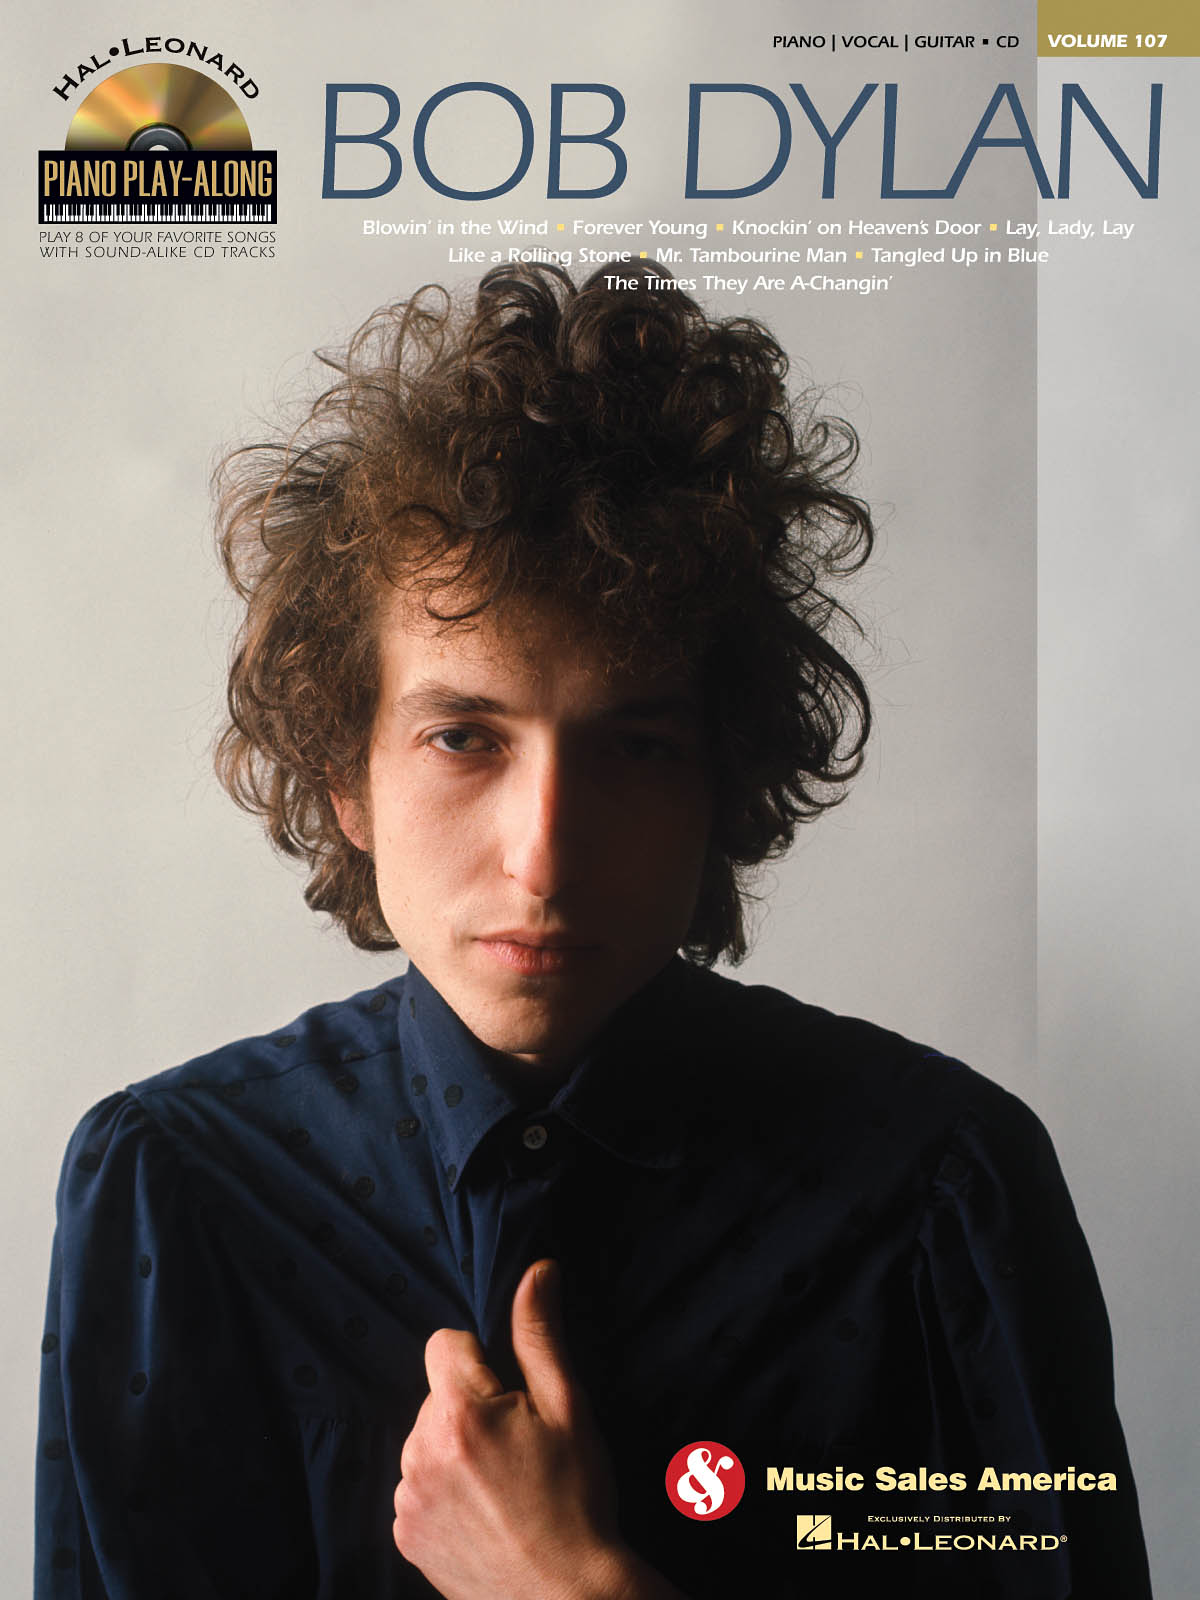 Bob Dylan - Piano Play-Along Volume 107 známé písně pro klavír